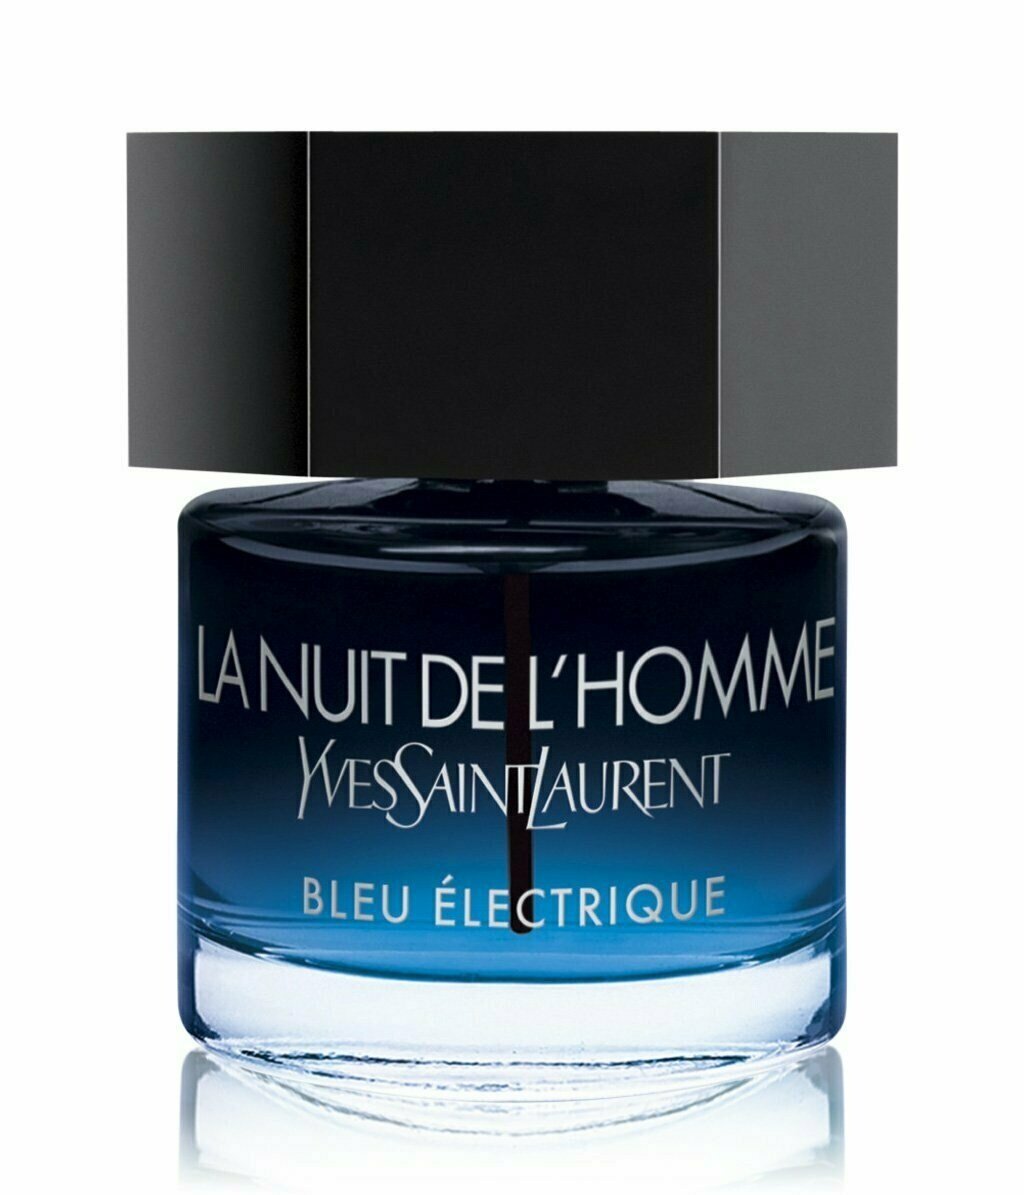 La Nuit de L'Homme Bleu Électrique by Yves Saint Laurent » Reviews & Perfume  Facts